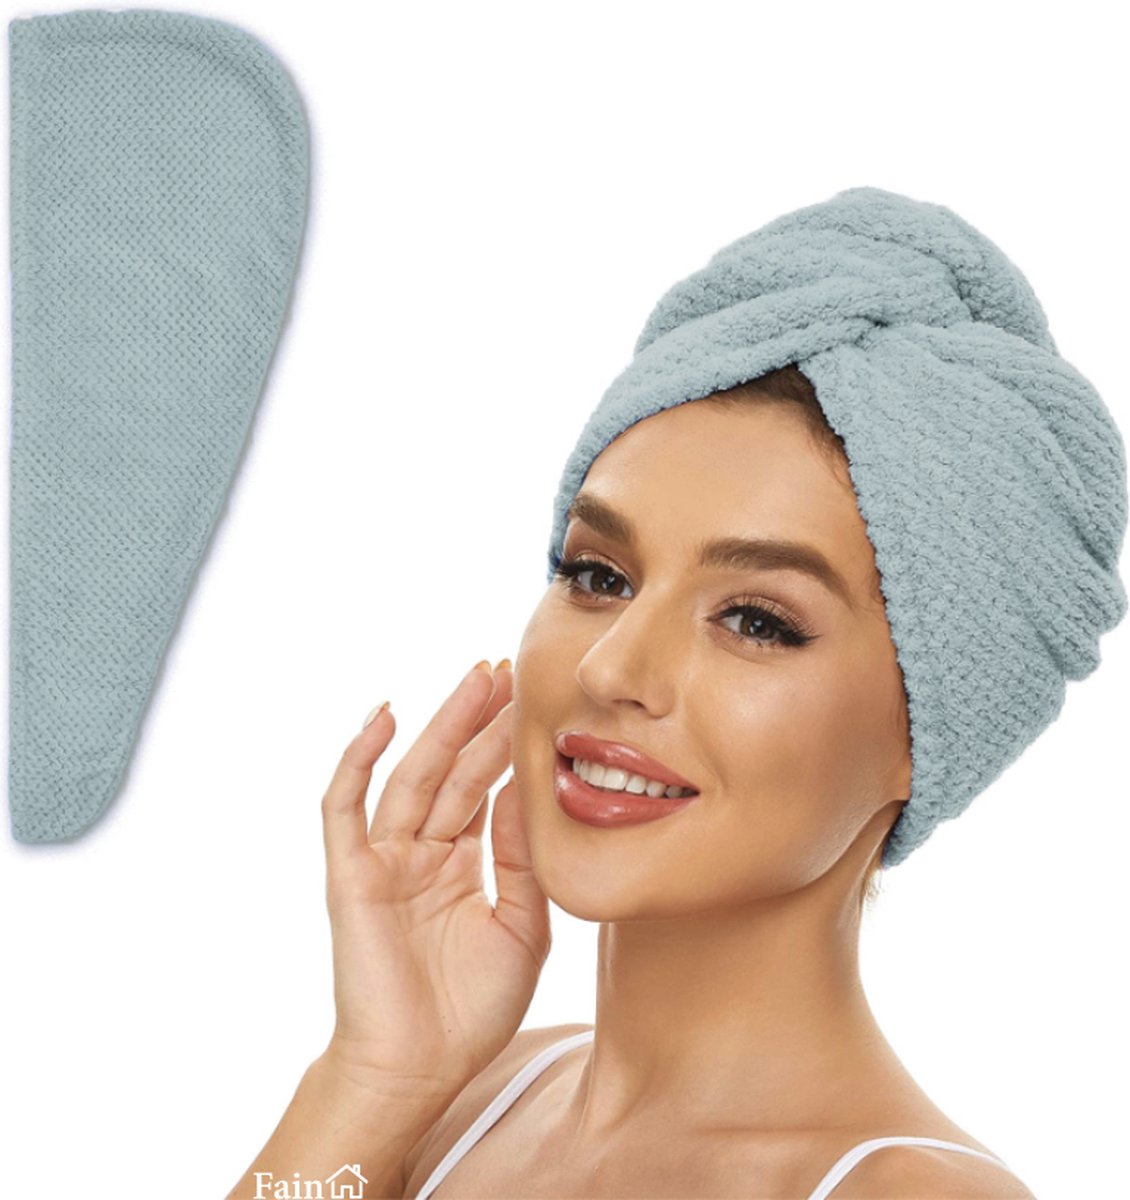 Fain® - Premium haarhanddoek – Hair towel – Licht blauw – Voor alle haartypes - Haarhanddoek microvezel - Hoofdhanddoek – Haartulband – Haarhanddoek badstof – Haarhanddoek kinderen – Haarhanddoek sneldrogend